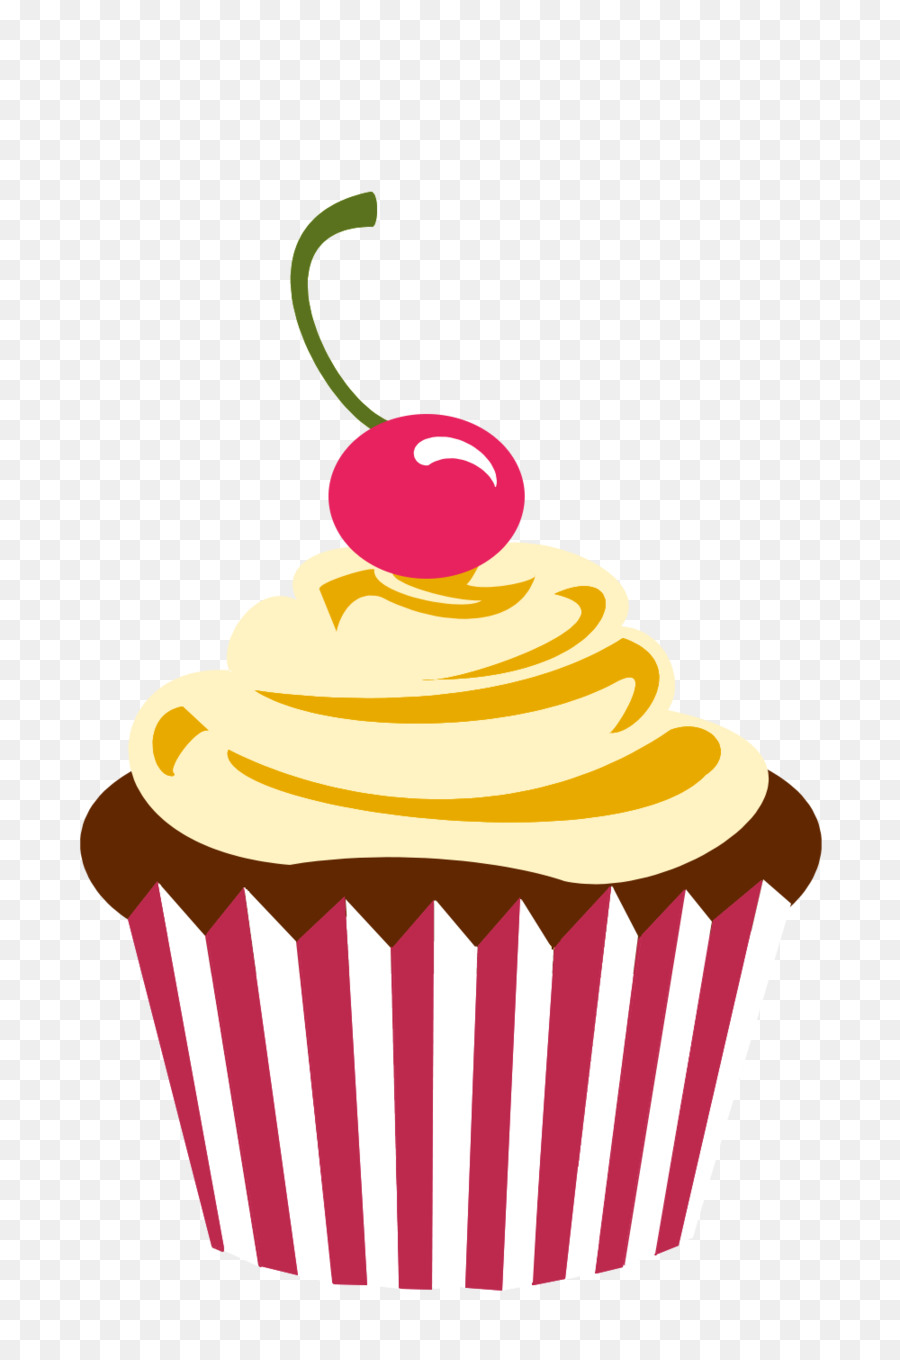 Cupcake-Frosting & Glasur Muffin-Bäckerei Schokolade Kuchen - Schokoladenkuchen